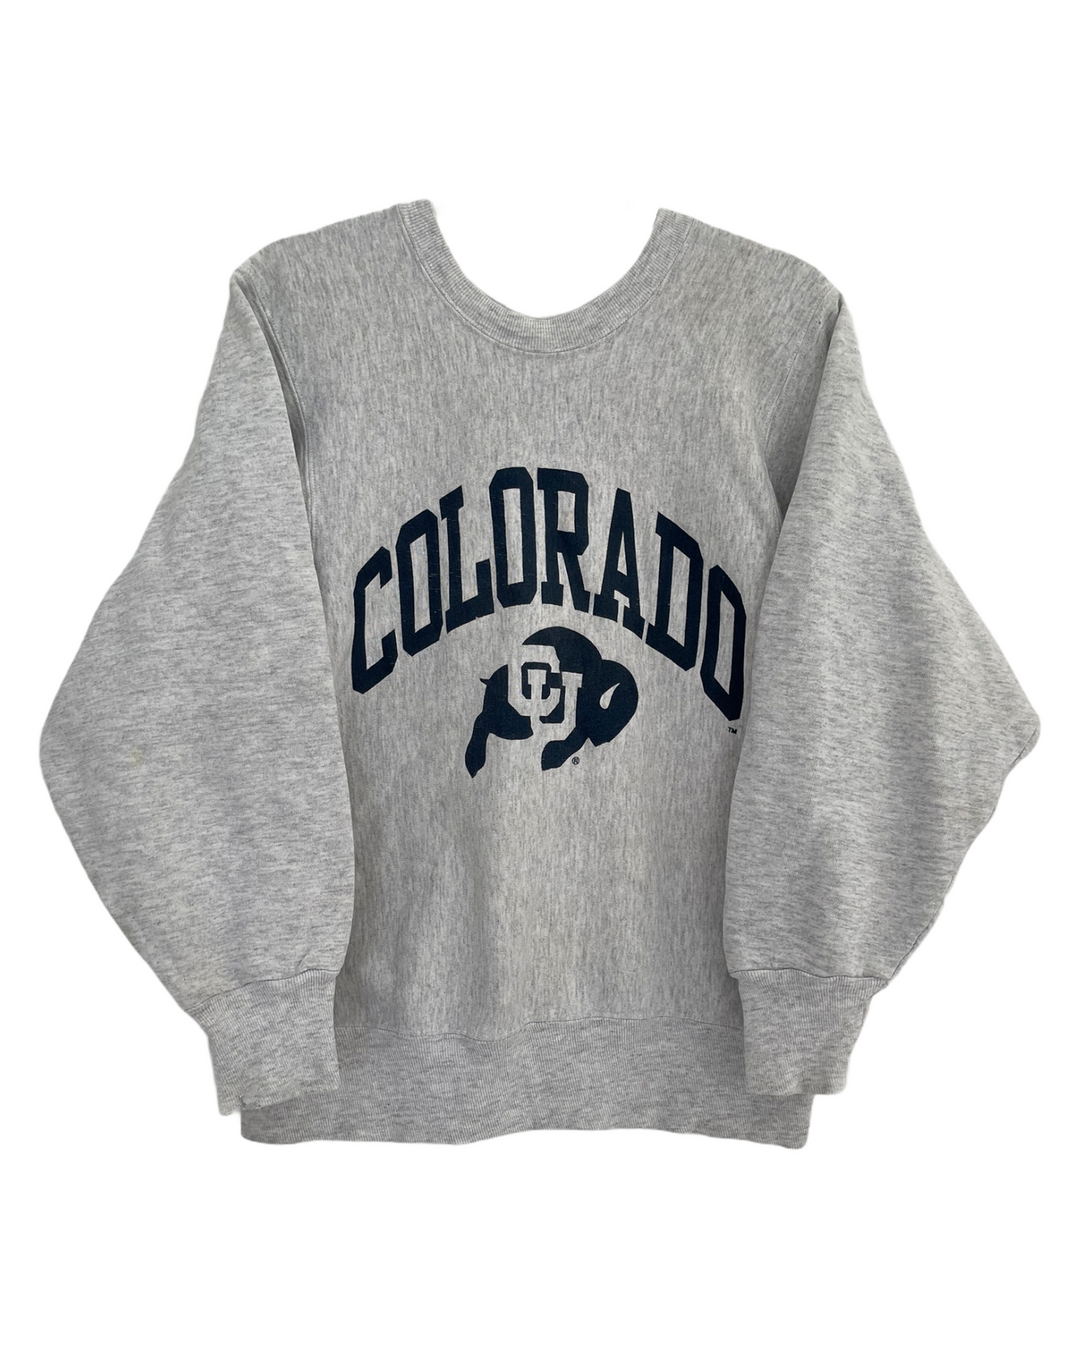 Colorado Boulder Vintage Sweatshirt